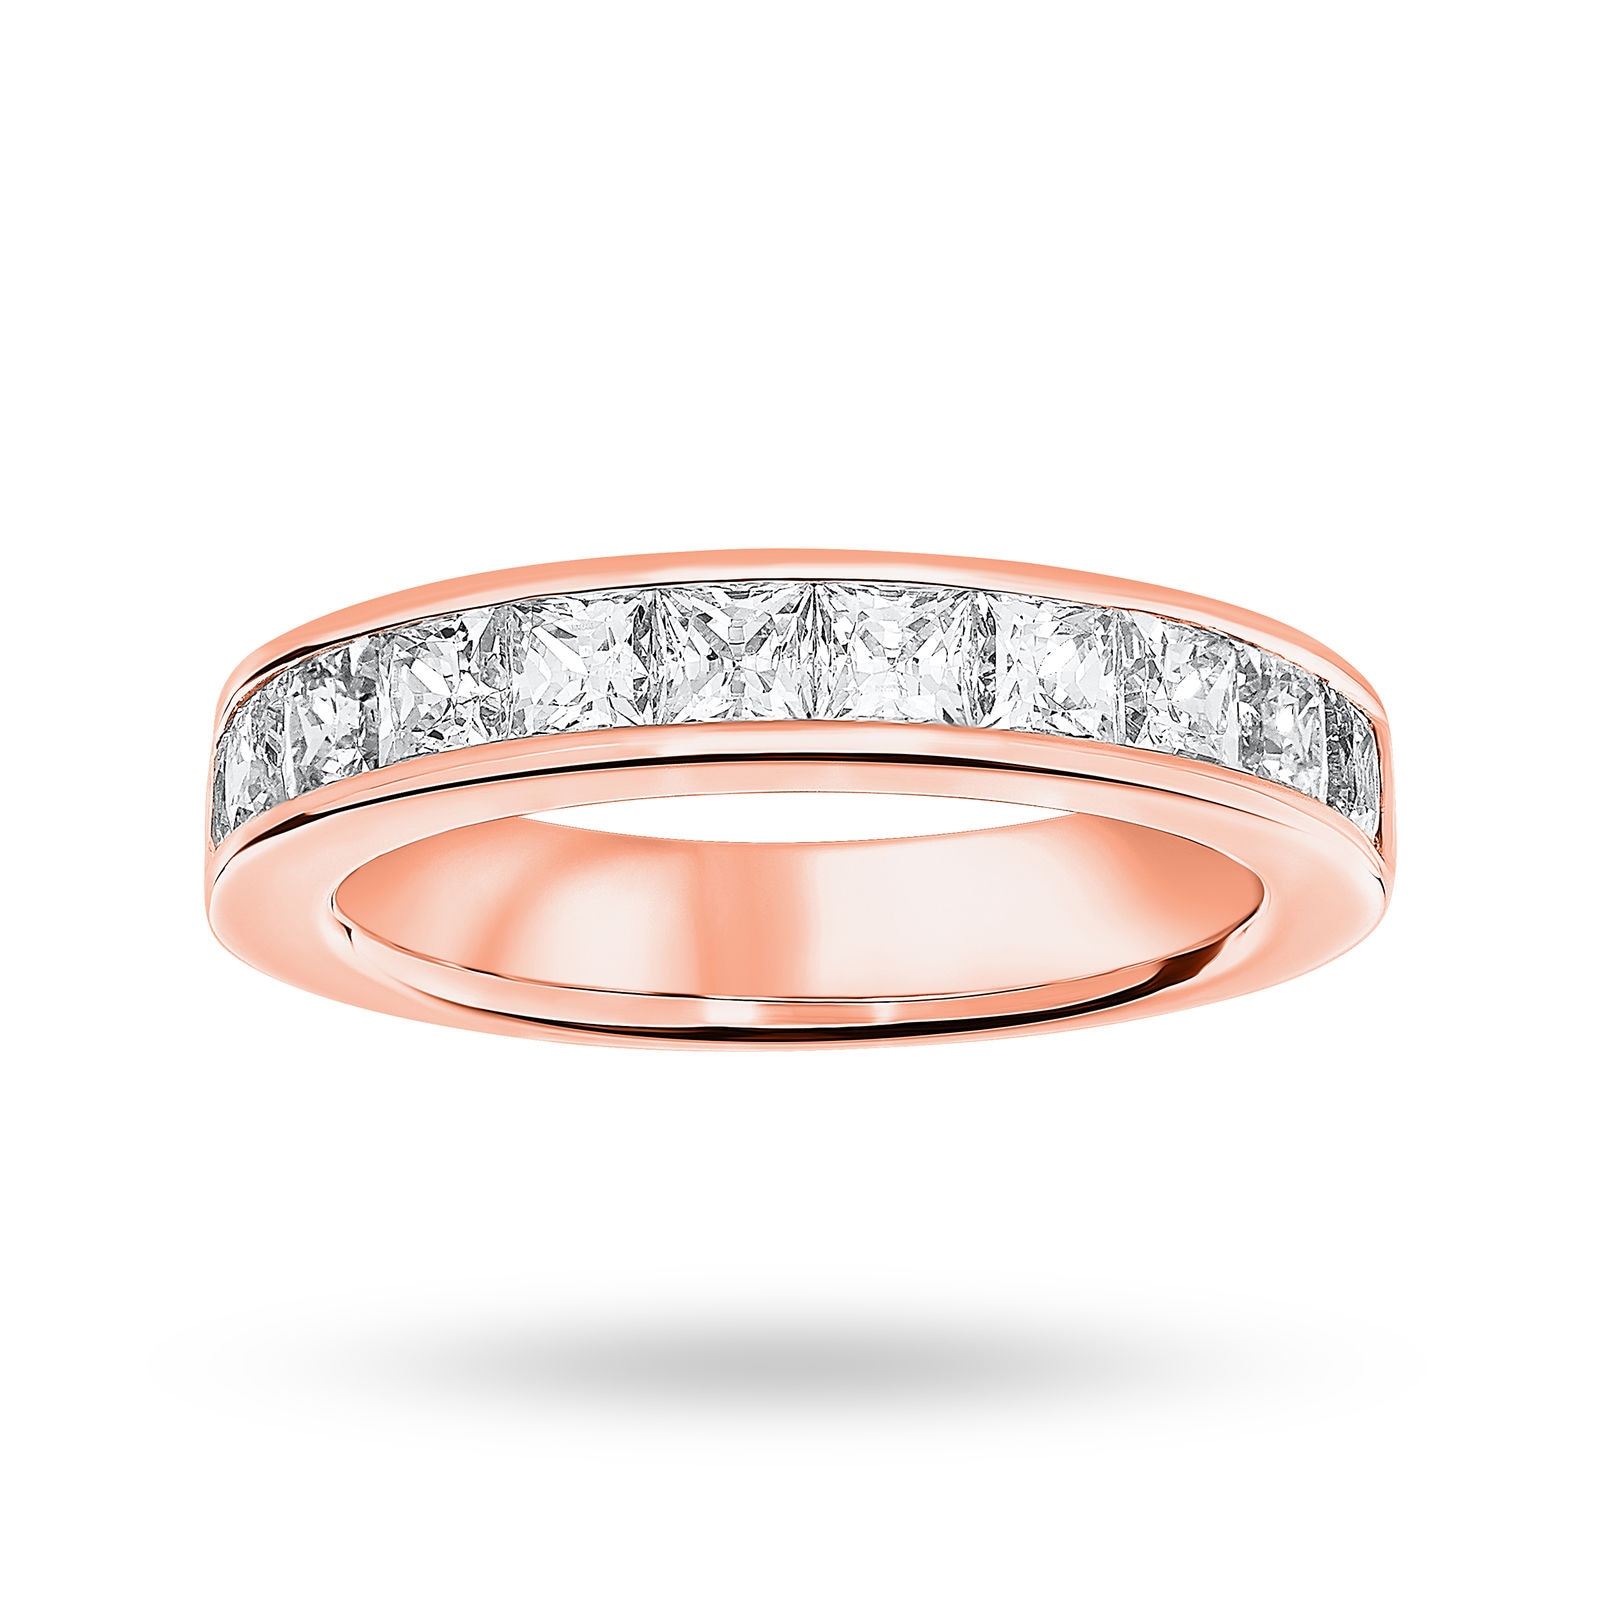 18 Carat Rose Gold 2.00 Carat Princess Cut Half Eternity Ring - Ring Size K